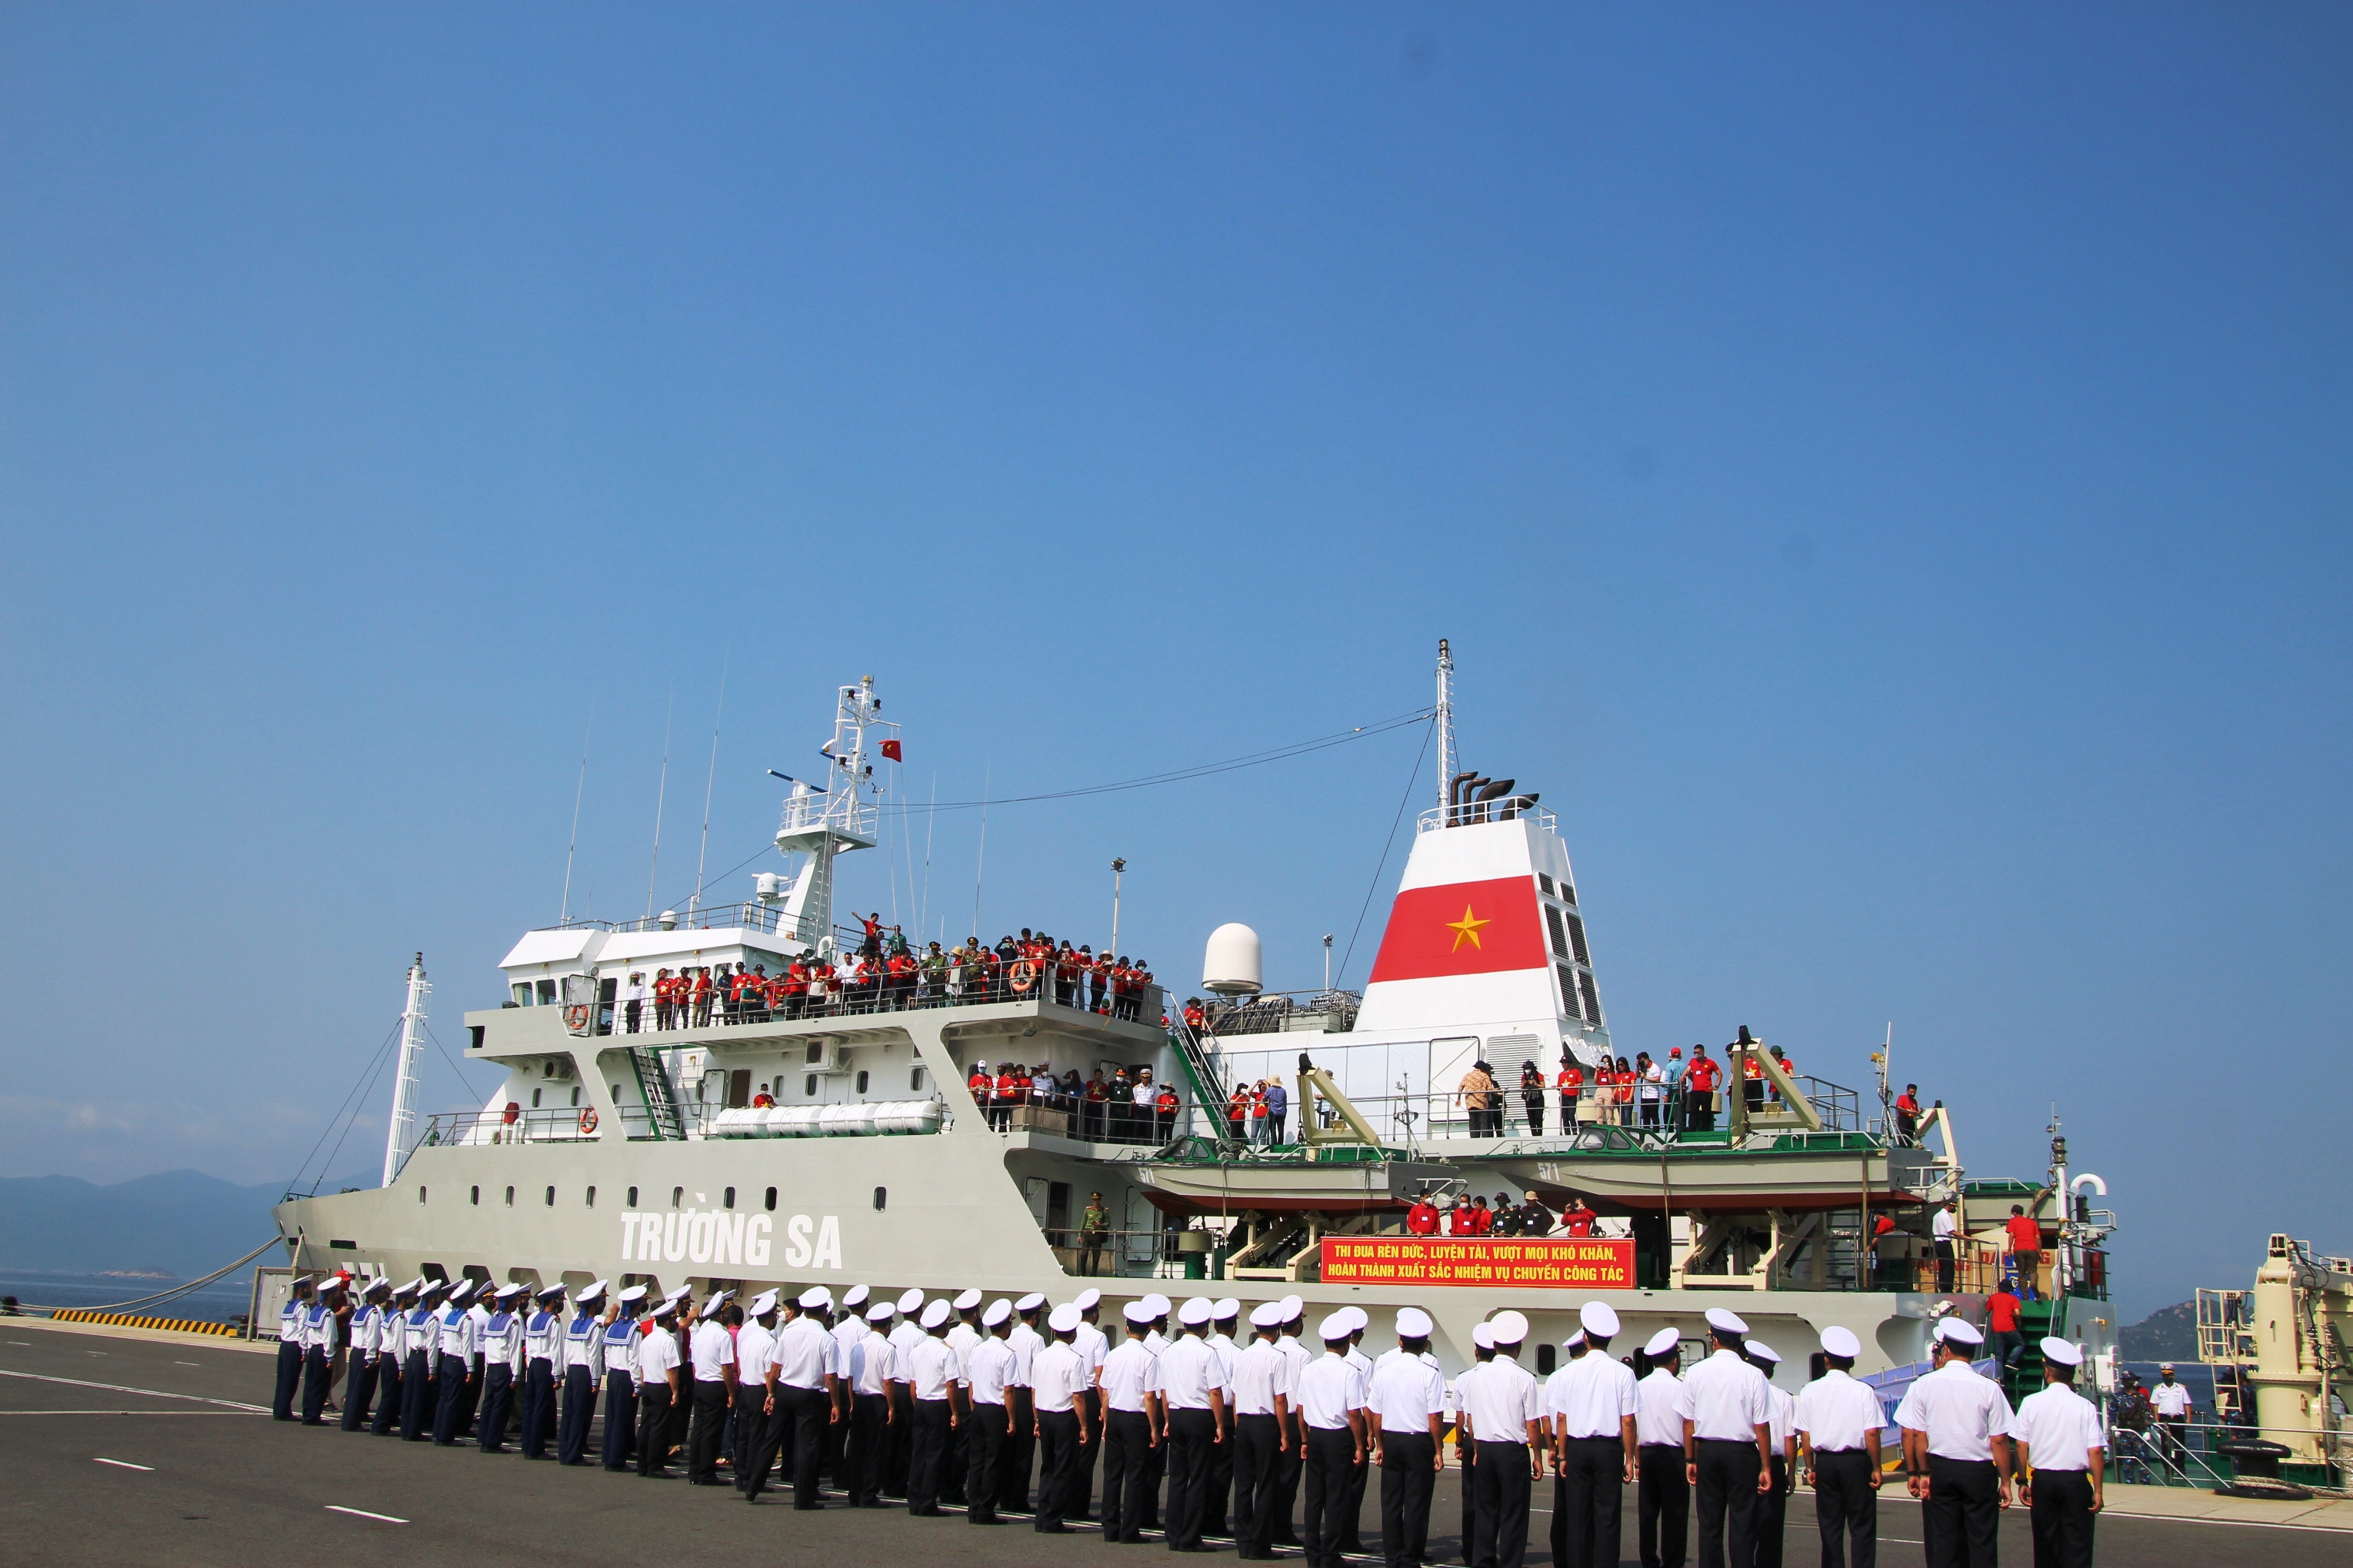 Tạm biệt đất liền, tàu 571 hành trình thăm cán bộ chiến sĩ Trường Sa, DK1